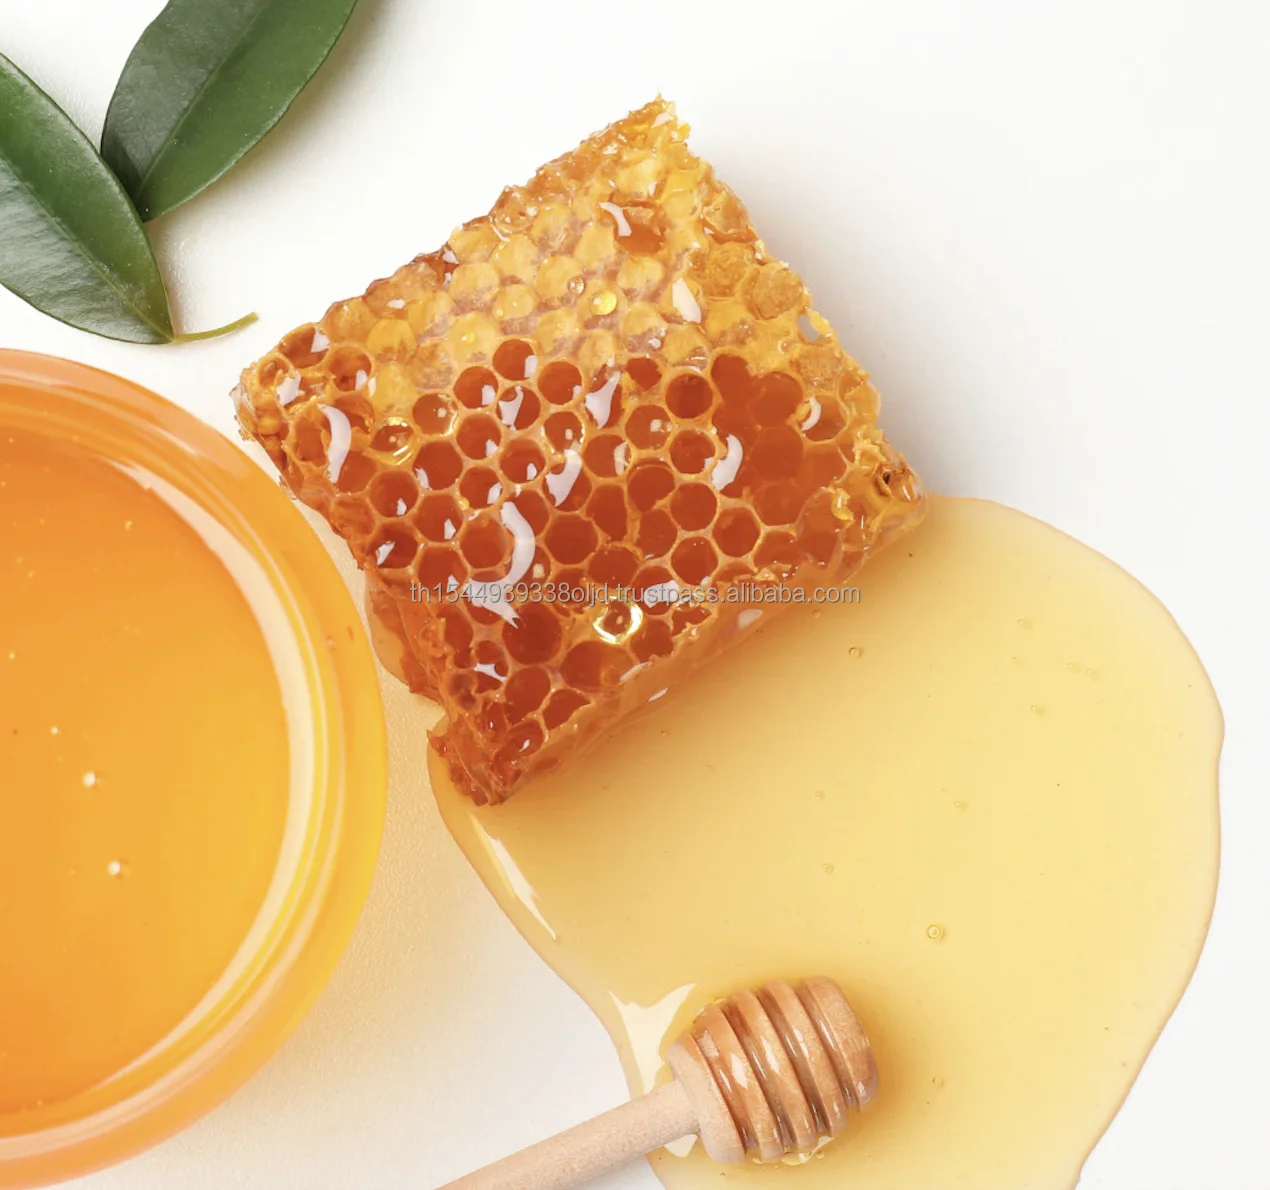 Healthy Food Sun Forest Honey Bottle 1000 grams Natural Honey Pure Plastic Honey Bottle Gift Box